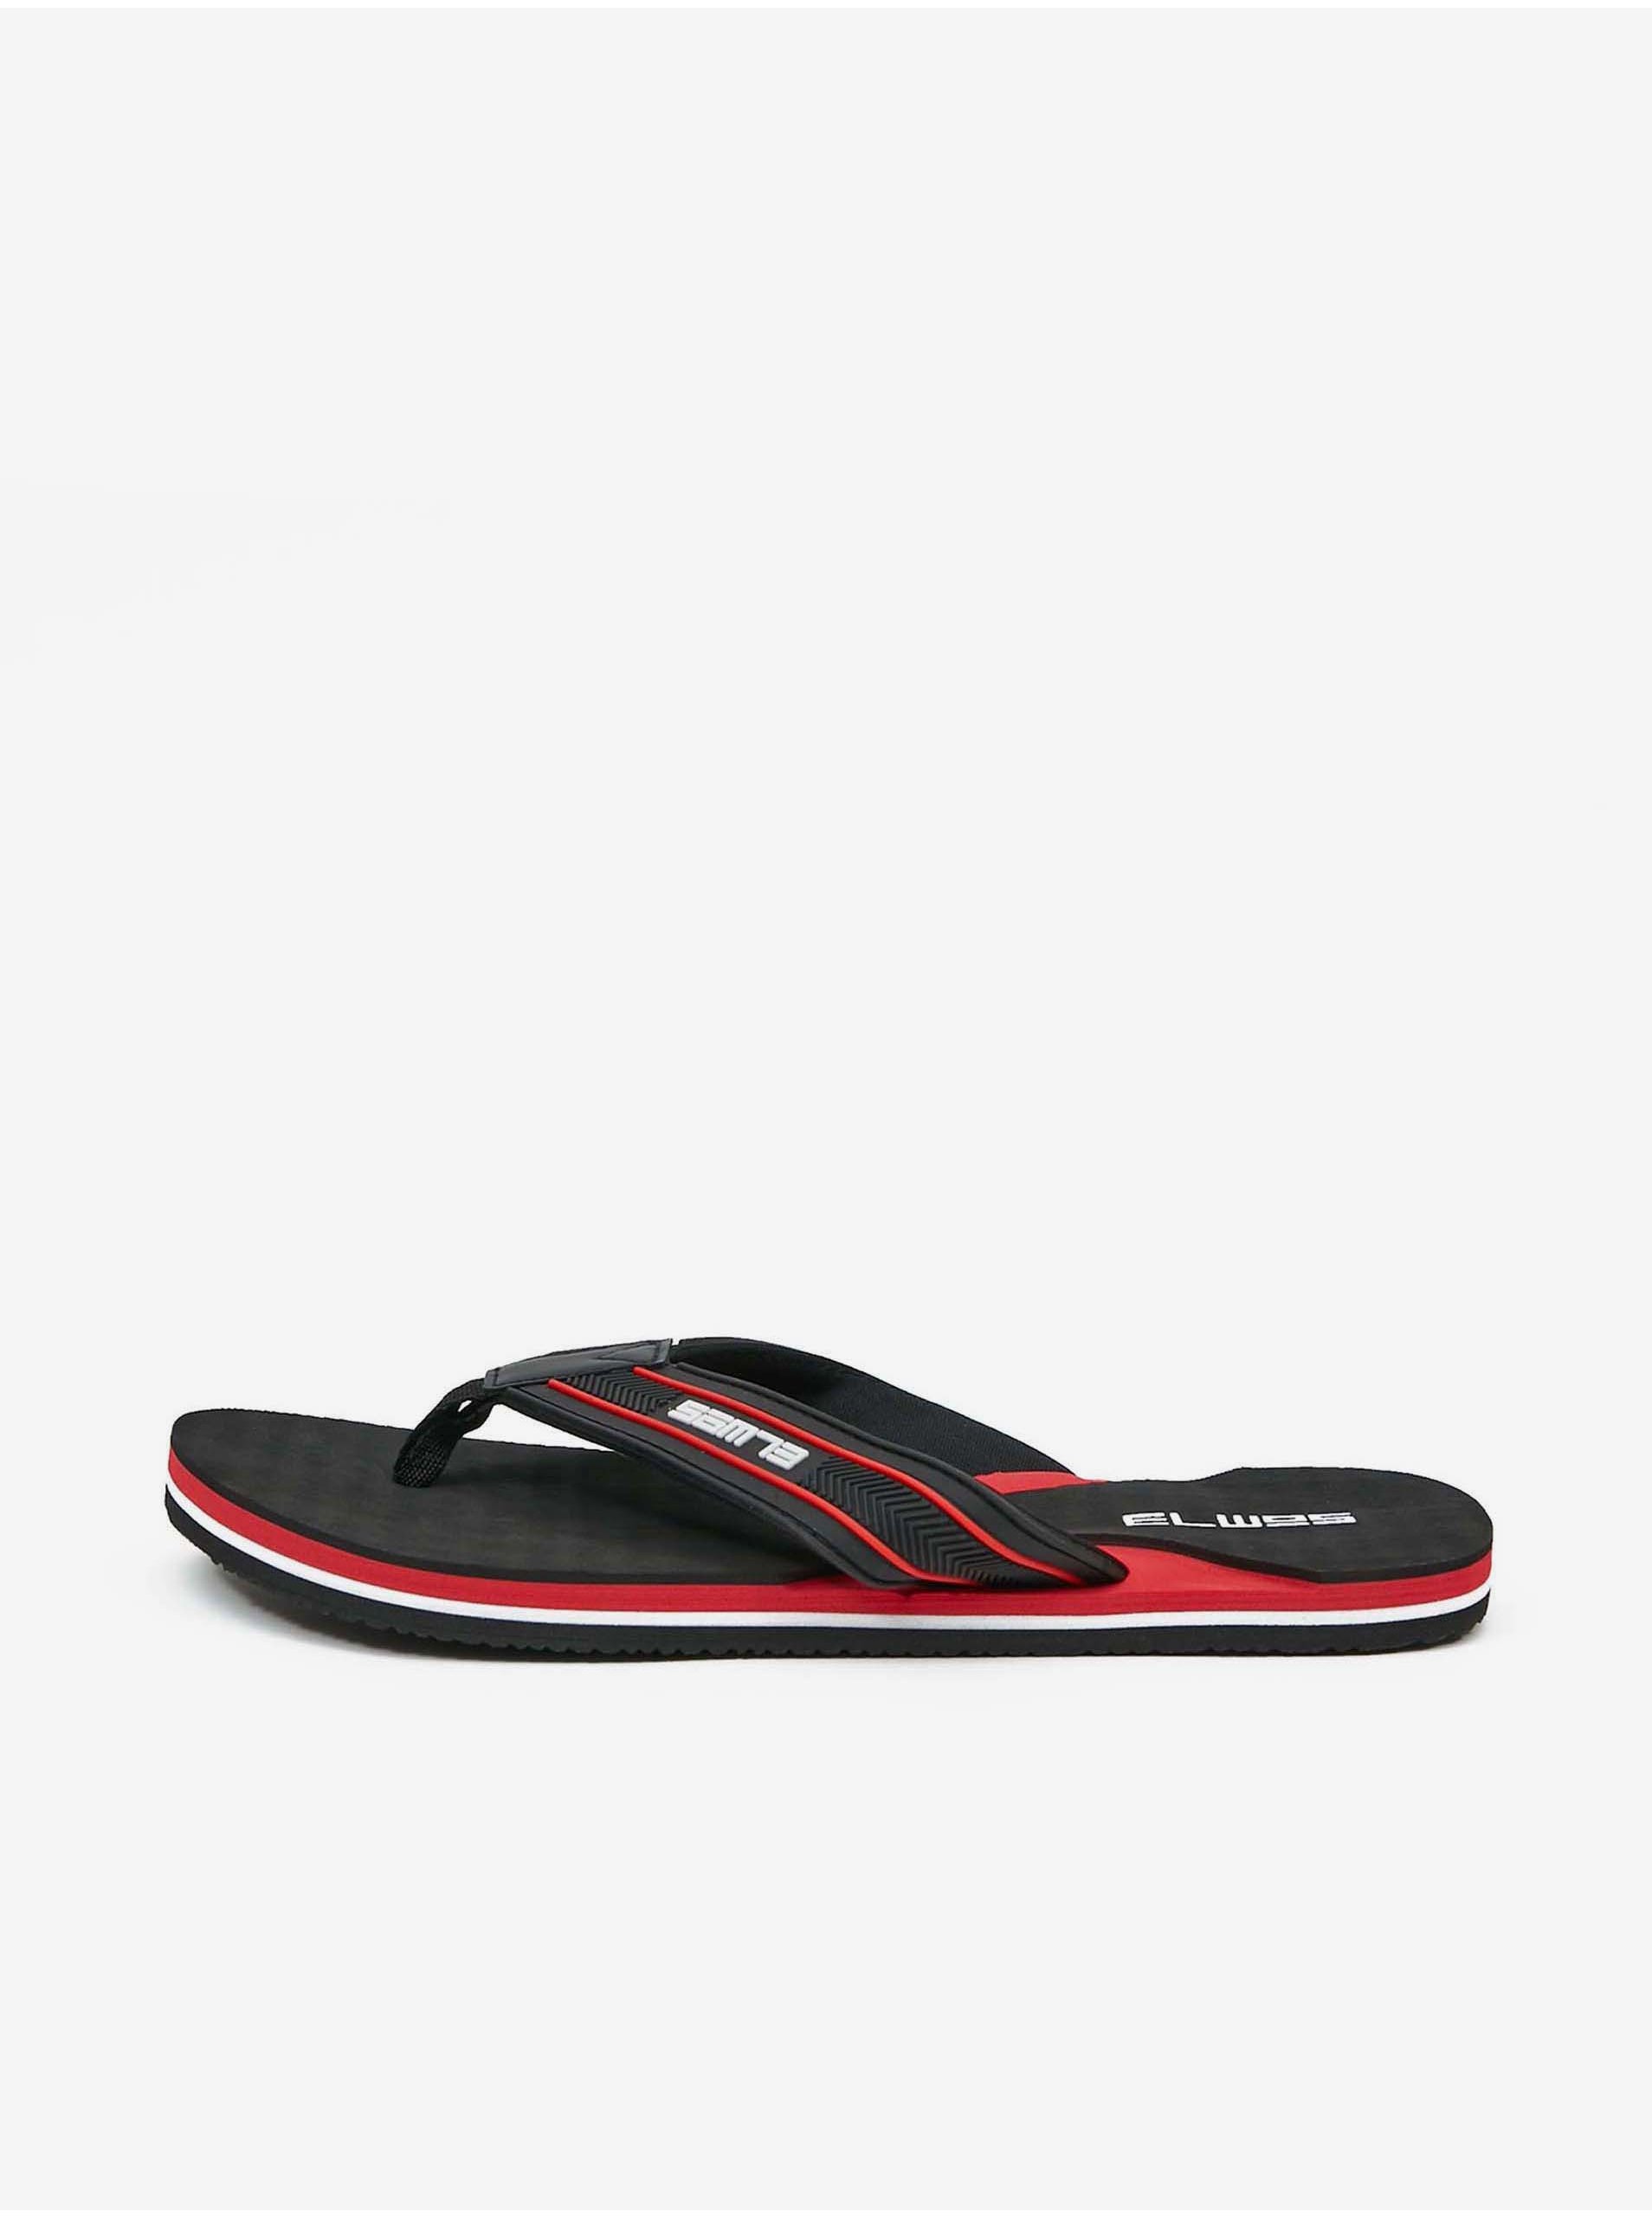 E-shop Sandále, papuče pre mužov SAM 73 - čierna, červená